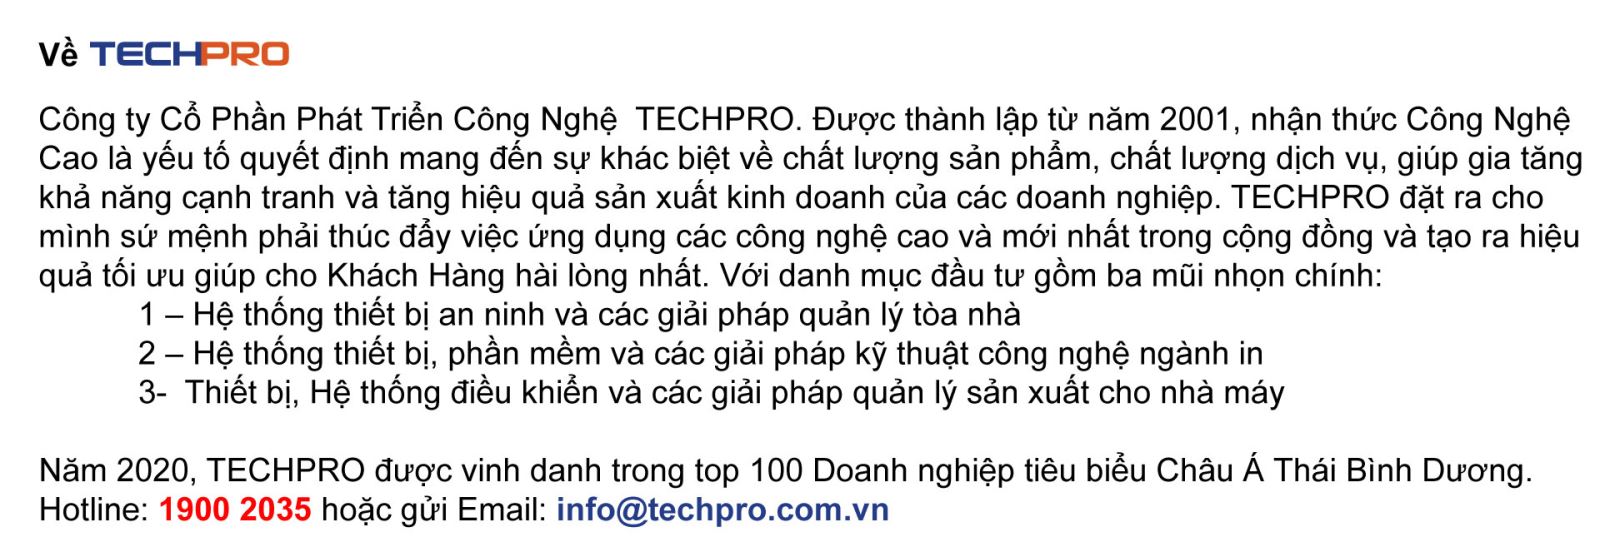 thông tin về công ty TECHPRO